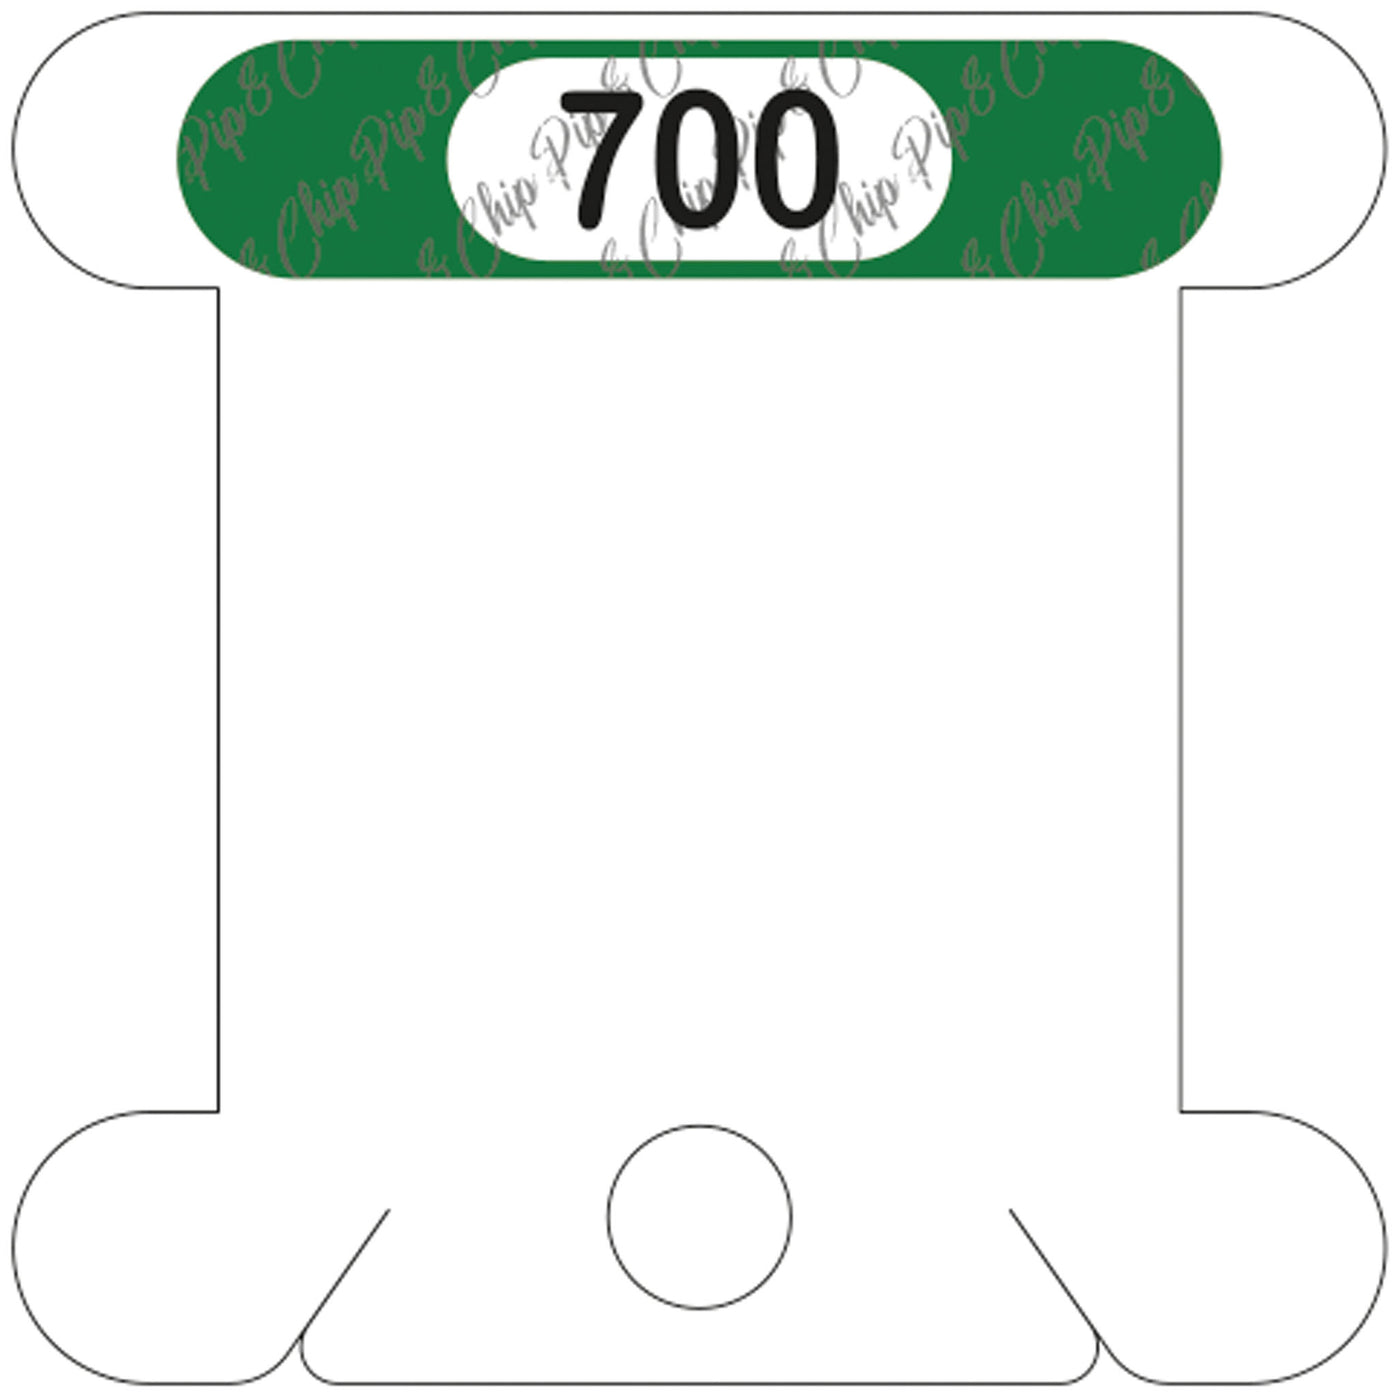 DMC 700 acrylic bobbin